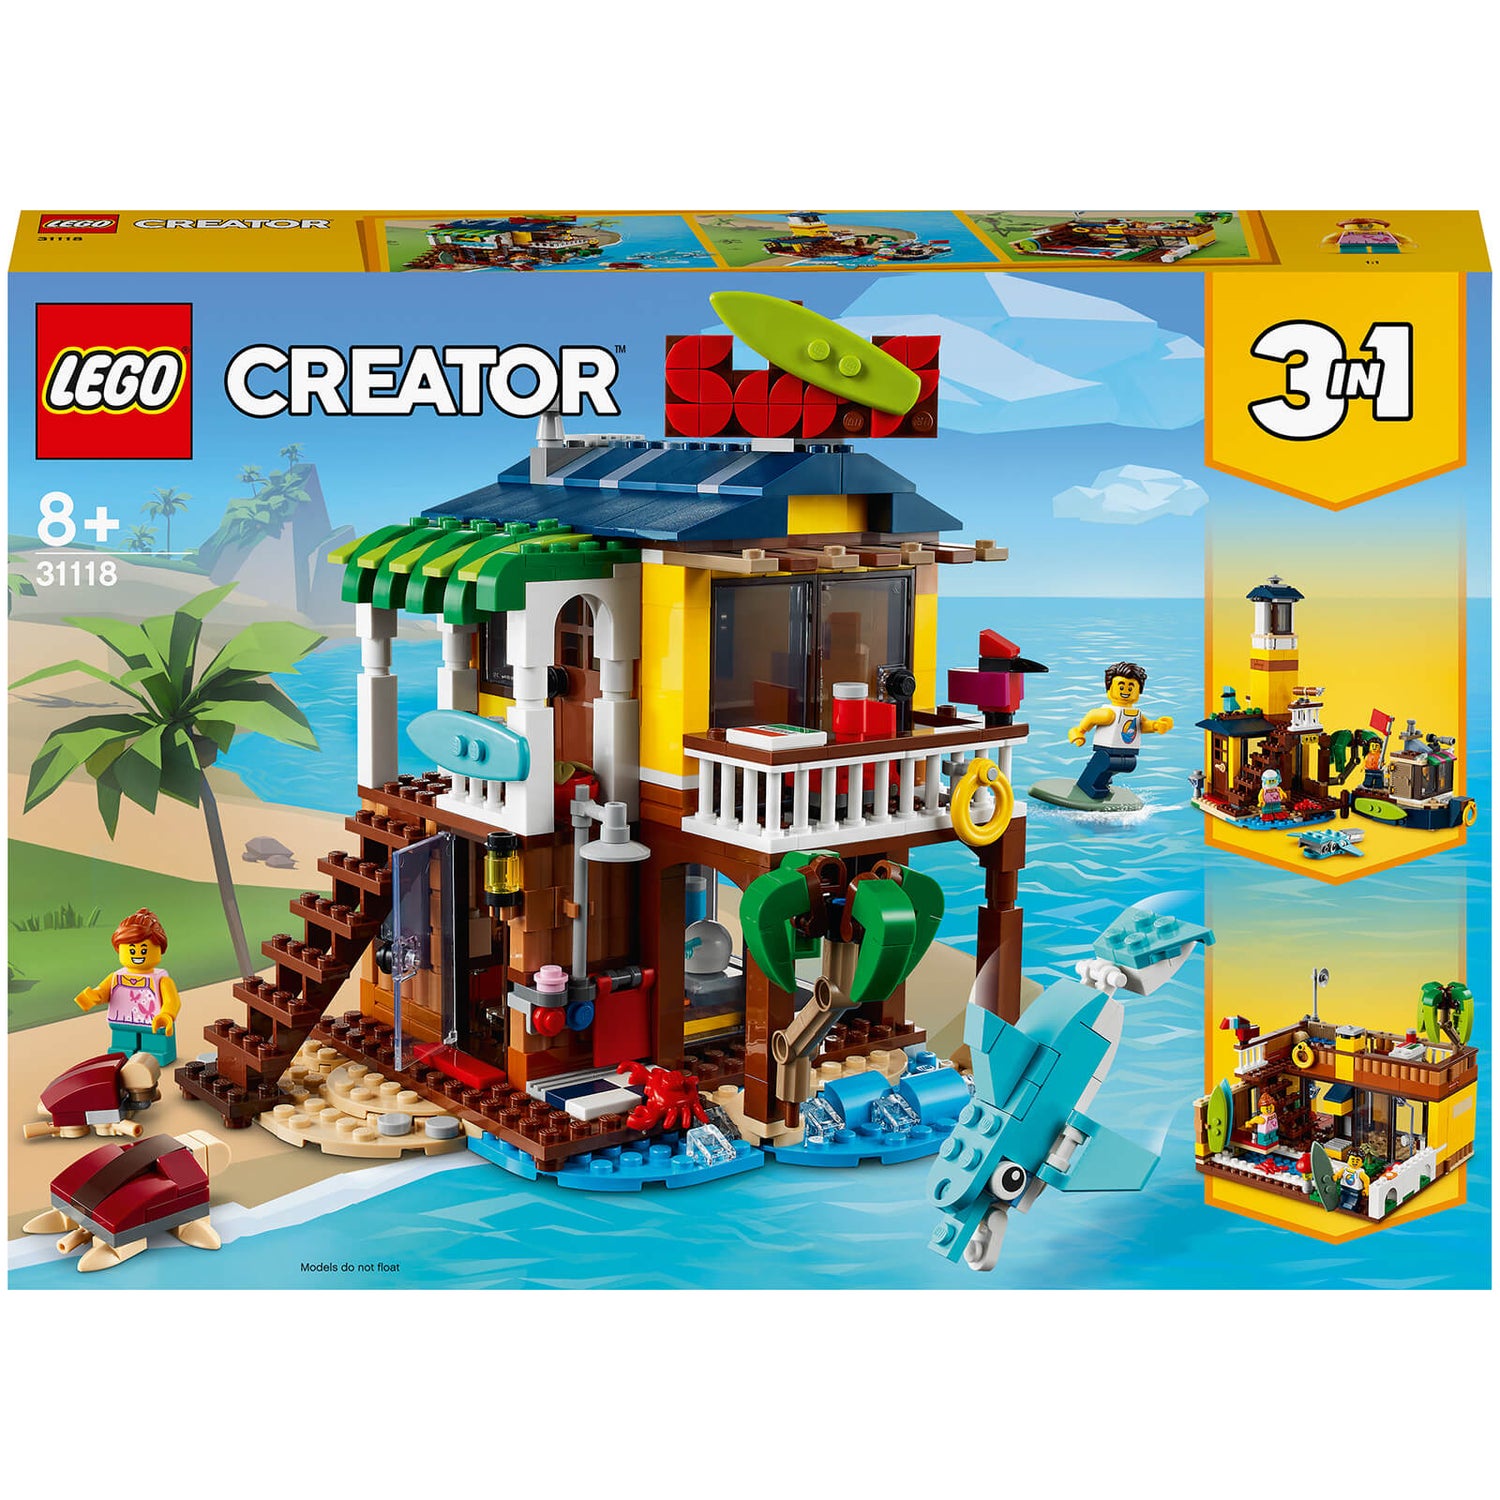 LEGO Creator: 3-in-1 Surfer-Strandhaus Spielzeugset für Kinder ab 8 (31118)